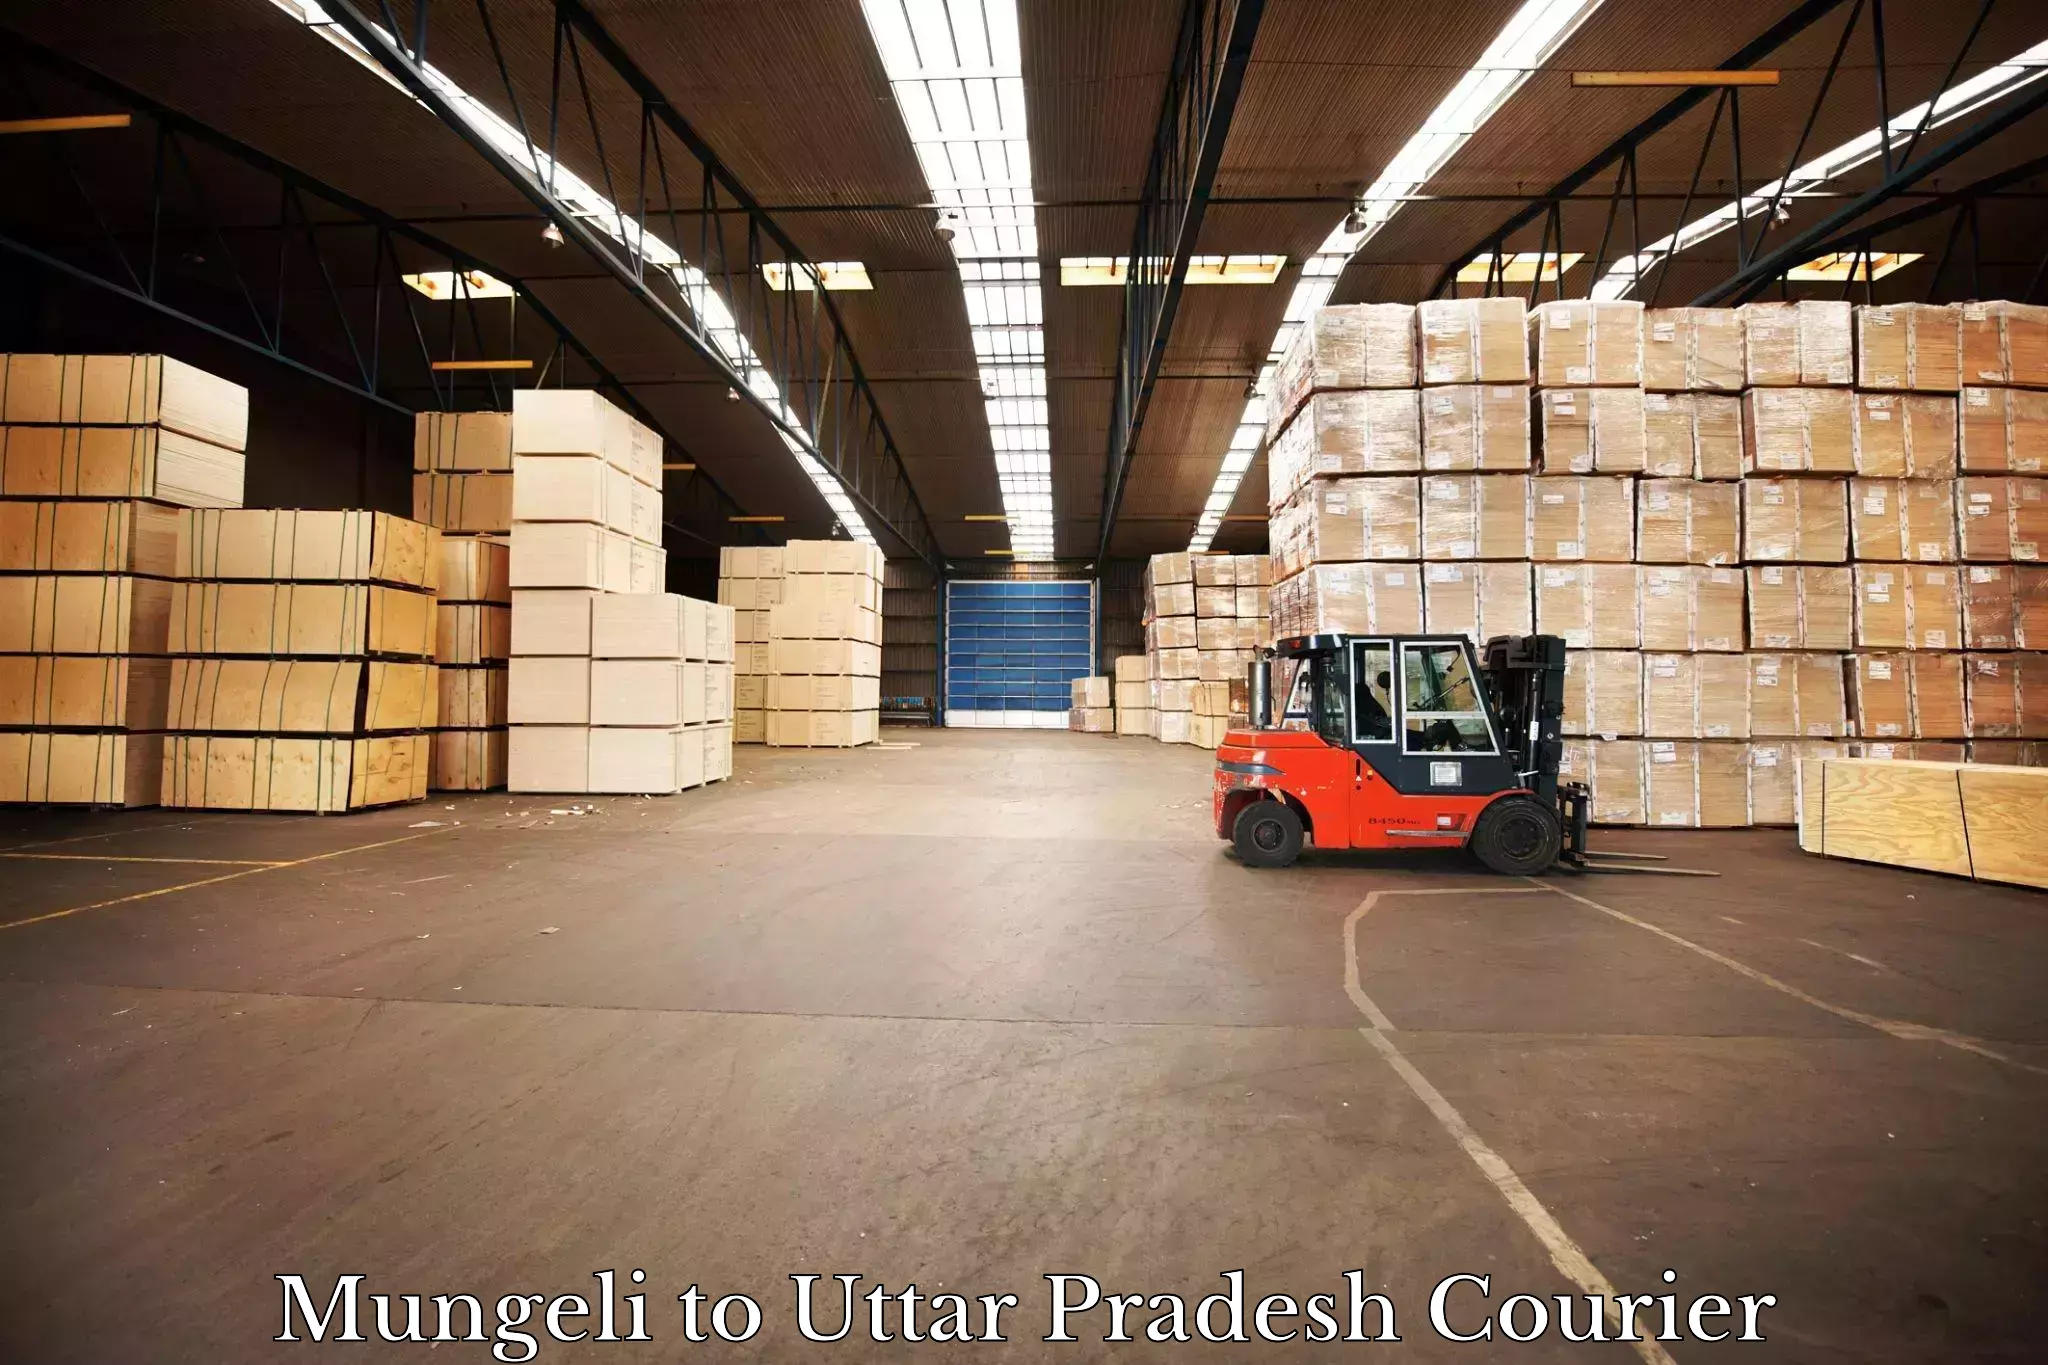 User-friendly courier app Mungeli to Uttar Pradesh